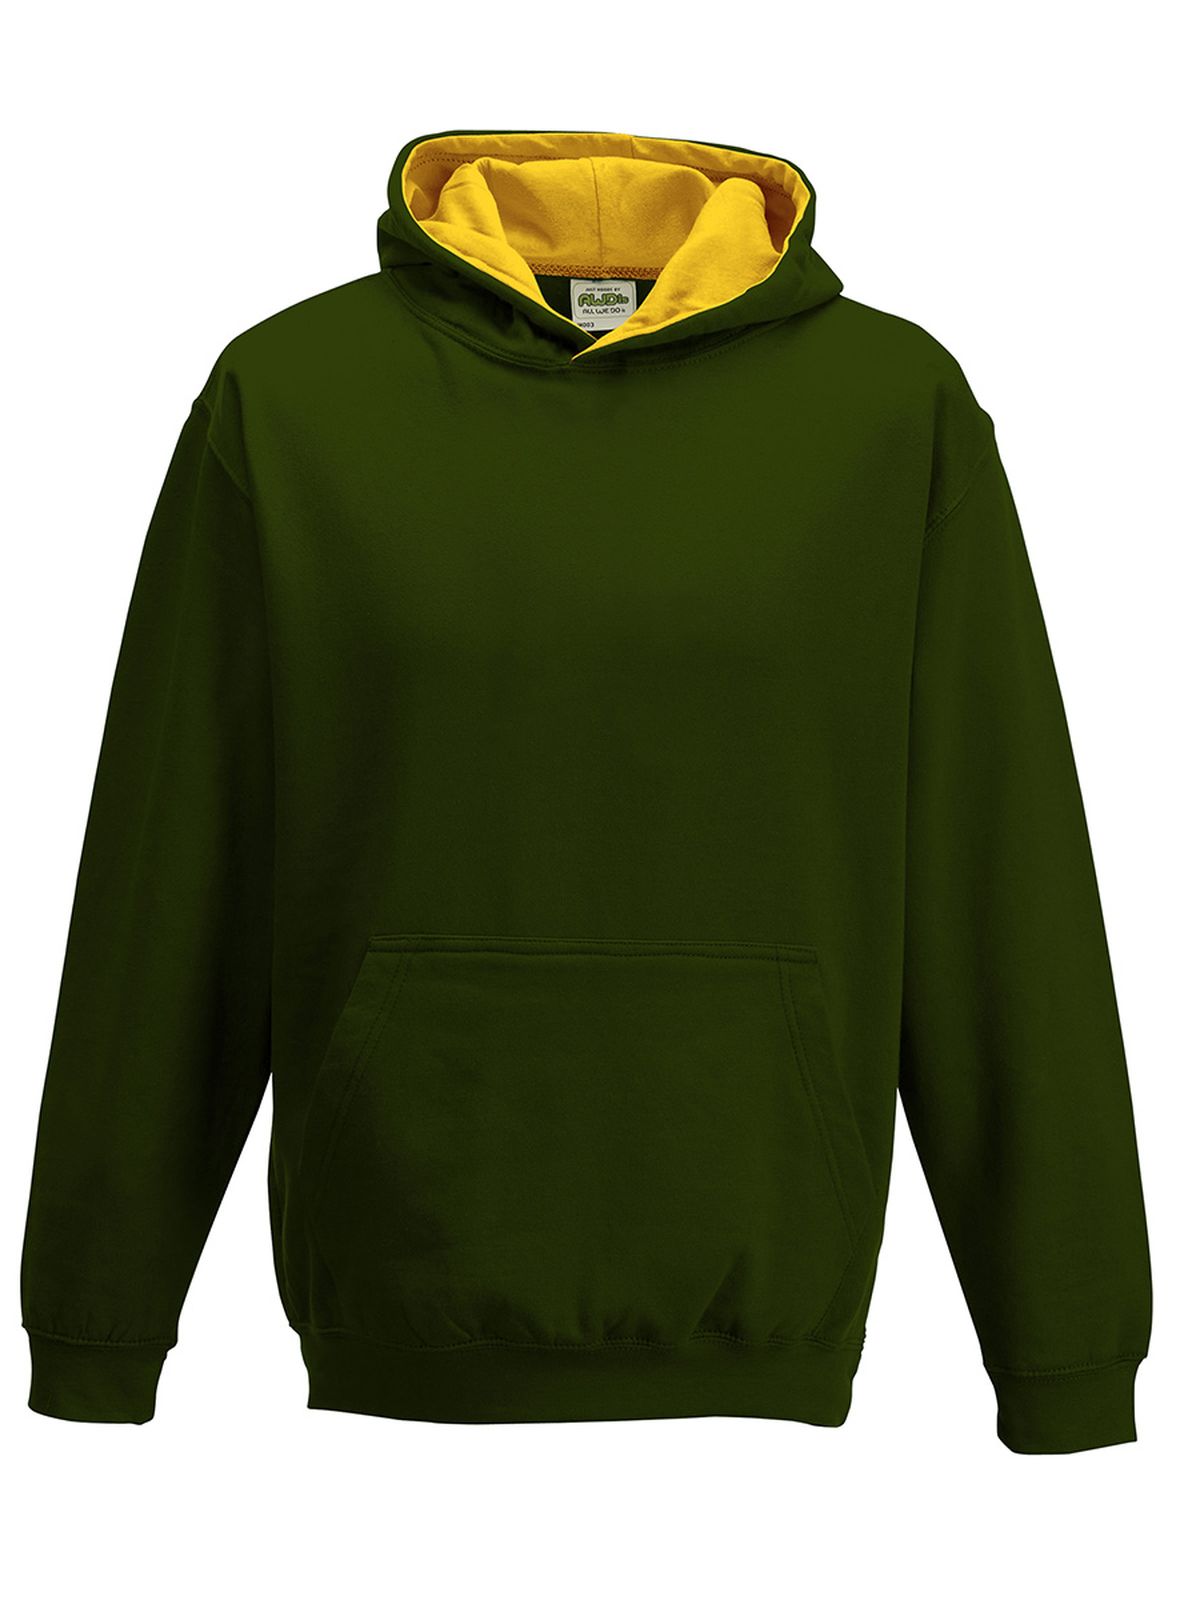 kids-varsity-hoodie-forest-green-gold.webp